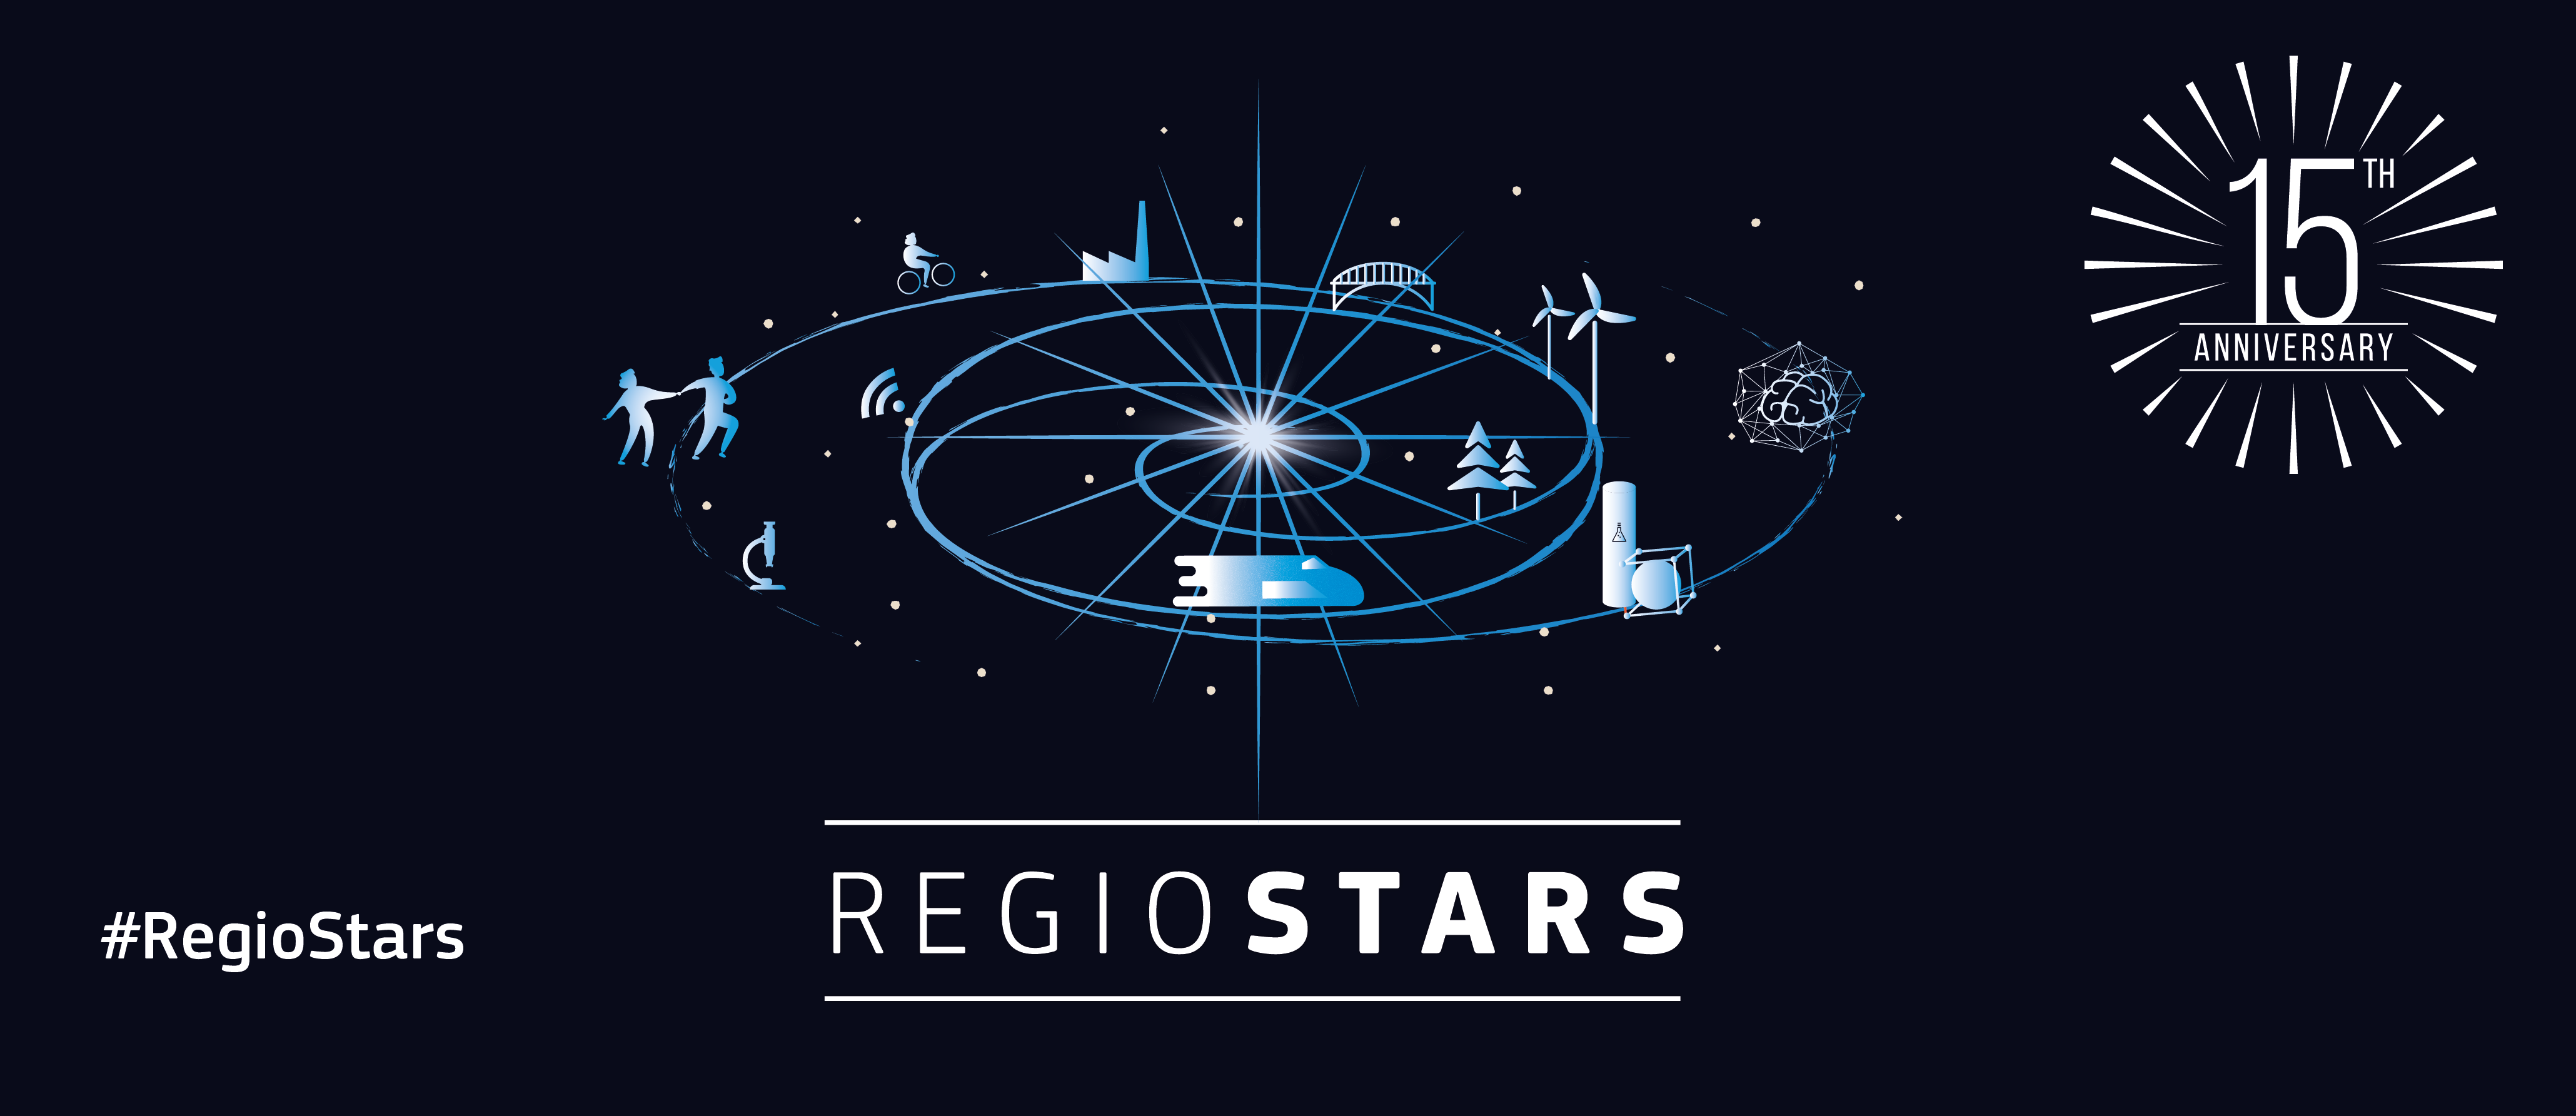 Imagen promocional de los premios RegioStar